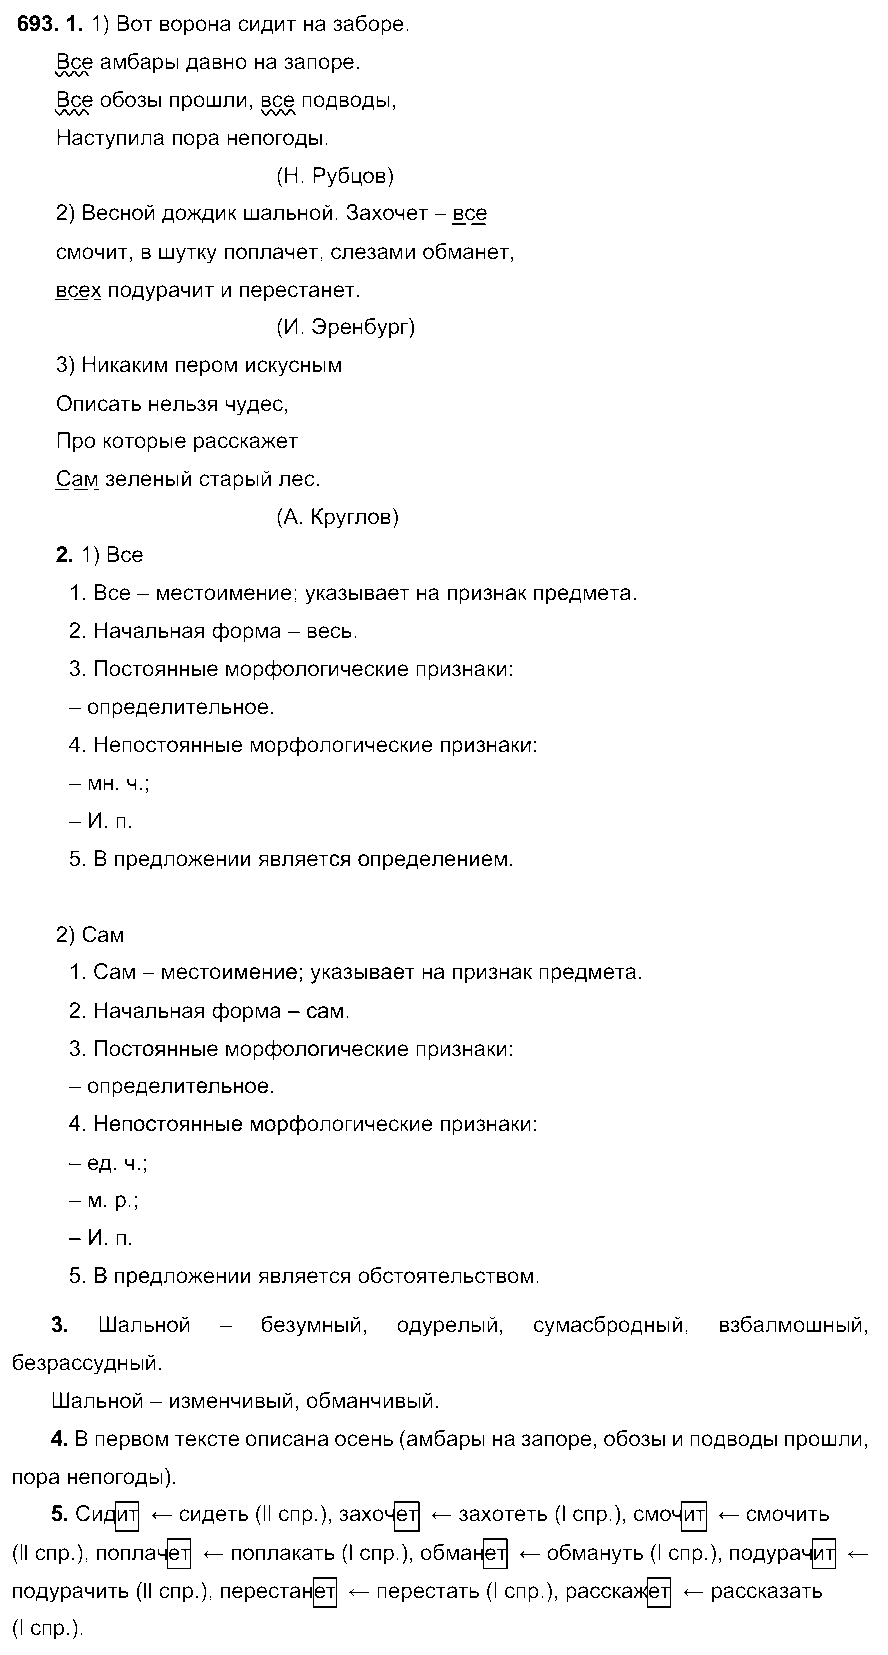 ГДЗ Русский язык 6 класс - 693